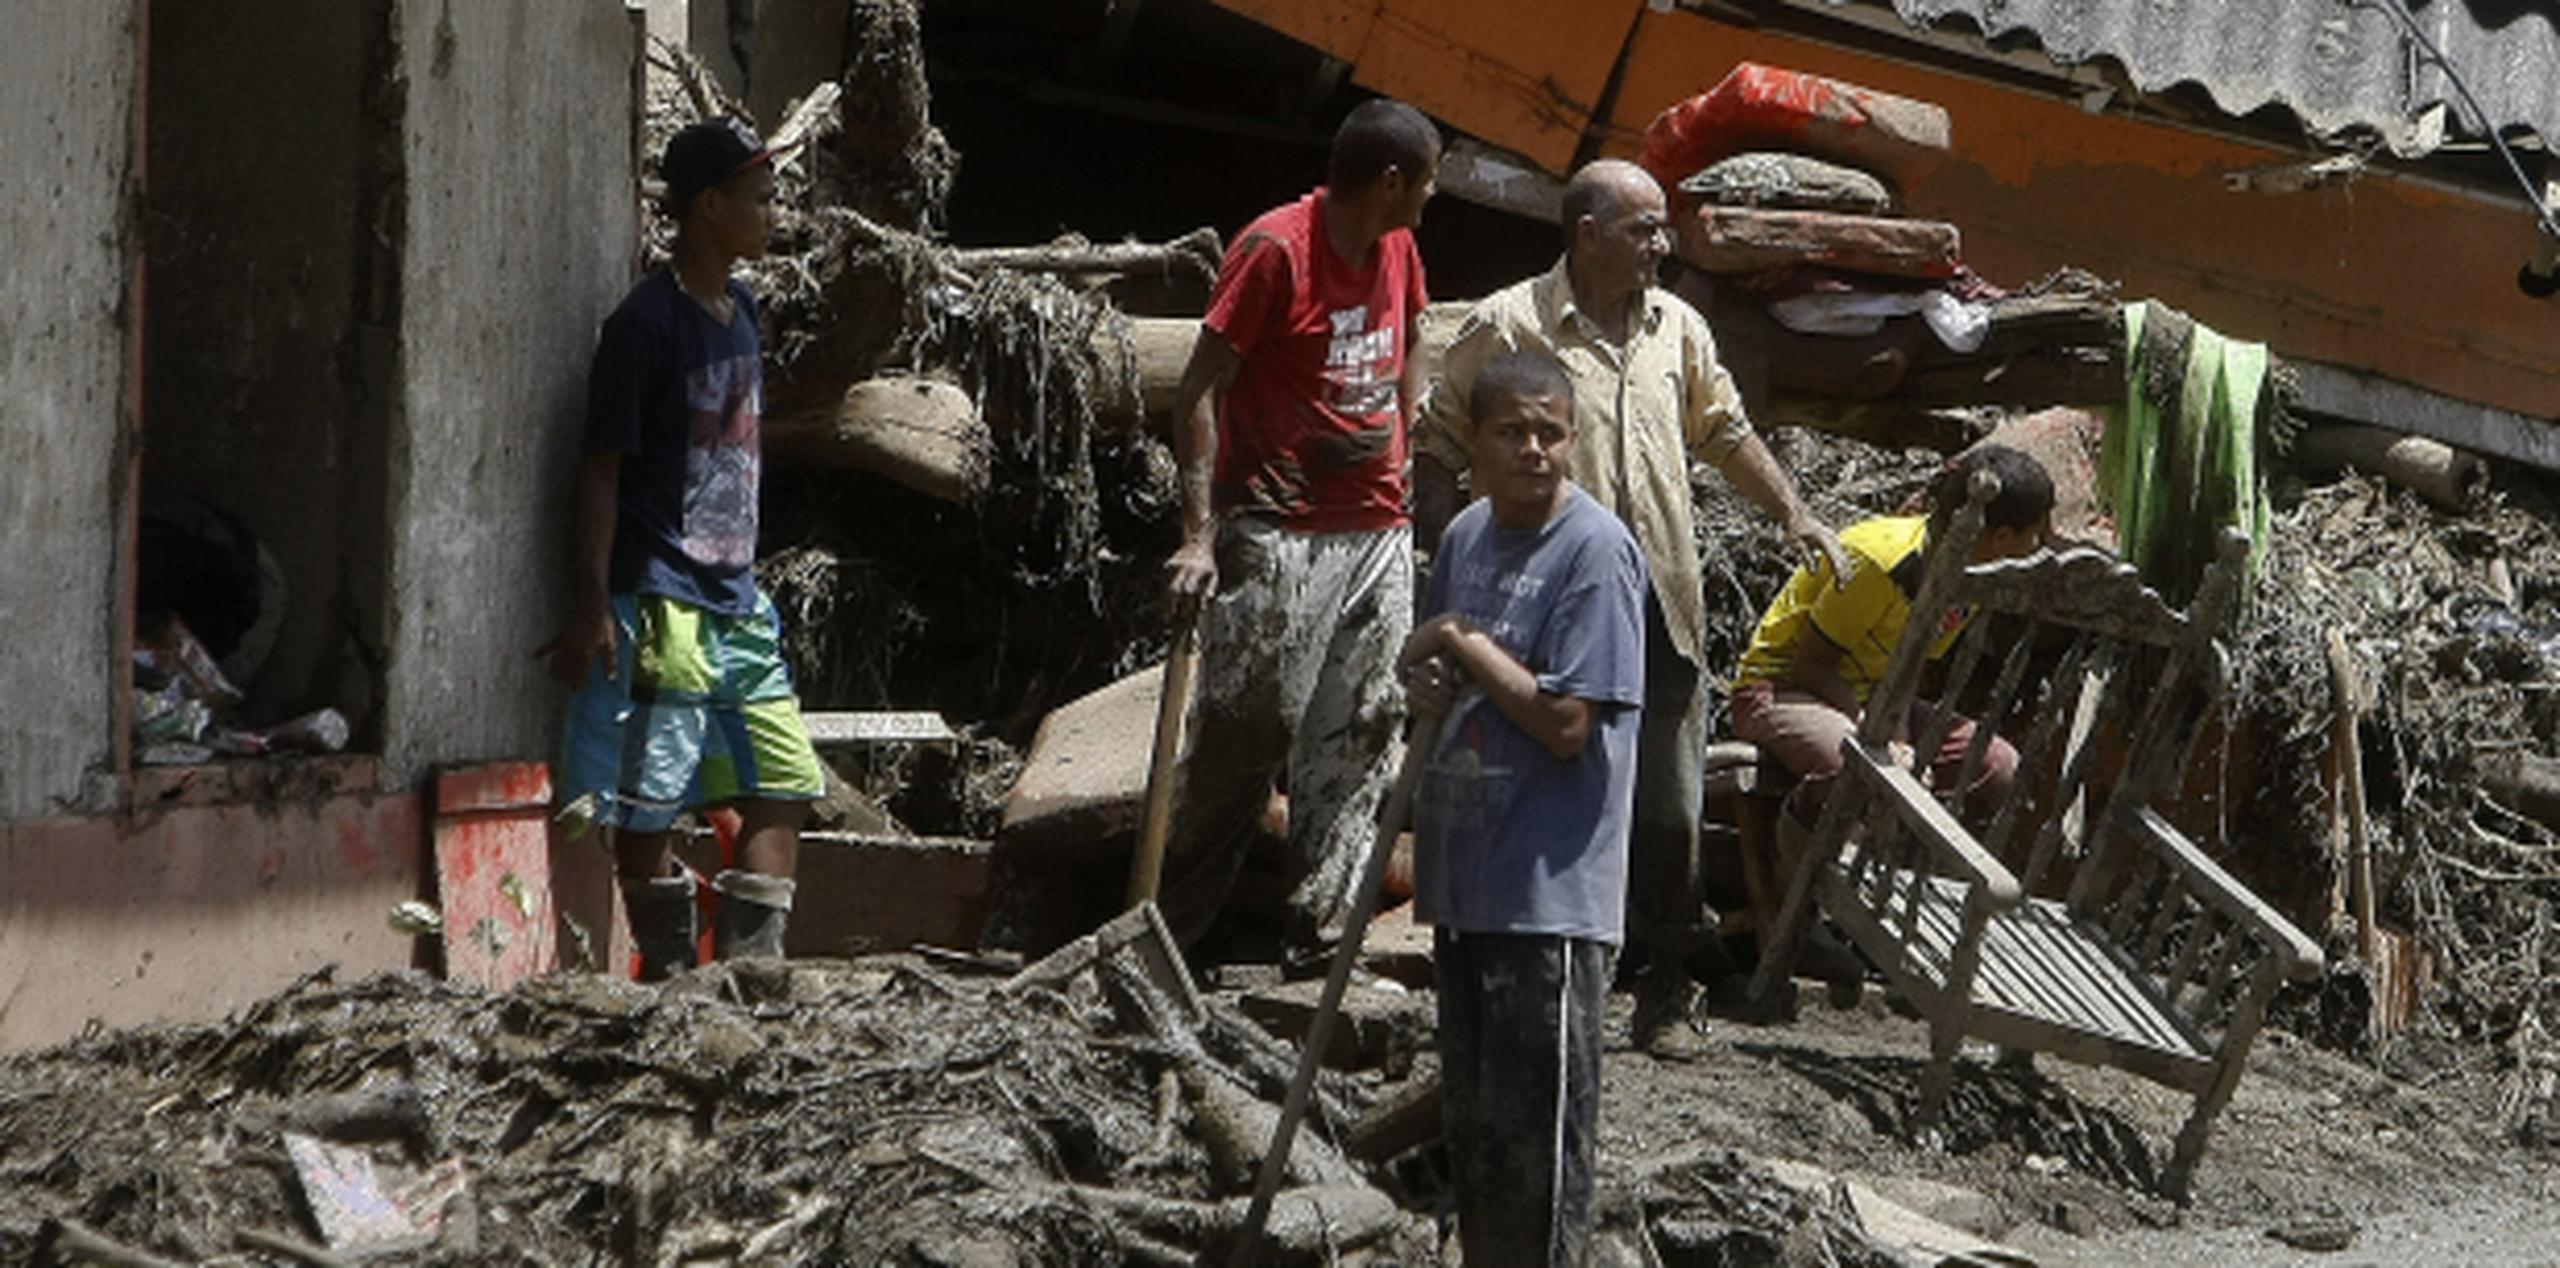 Barro y escombros arrasaron la localidad montañosa de Salgar, en el departamento de Antioquia, Colombia, dejando un número indeterminado de desaparecidos.(EFE)